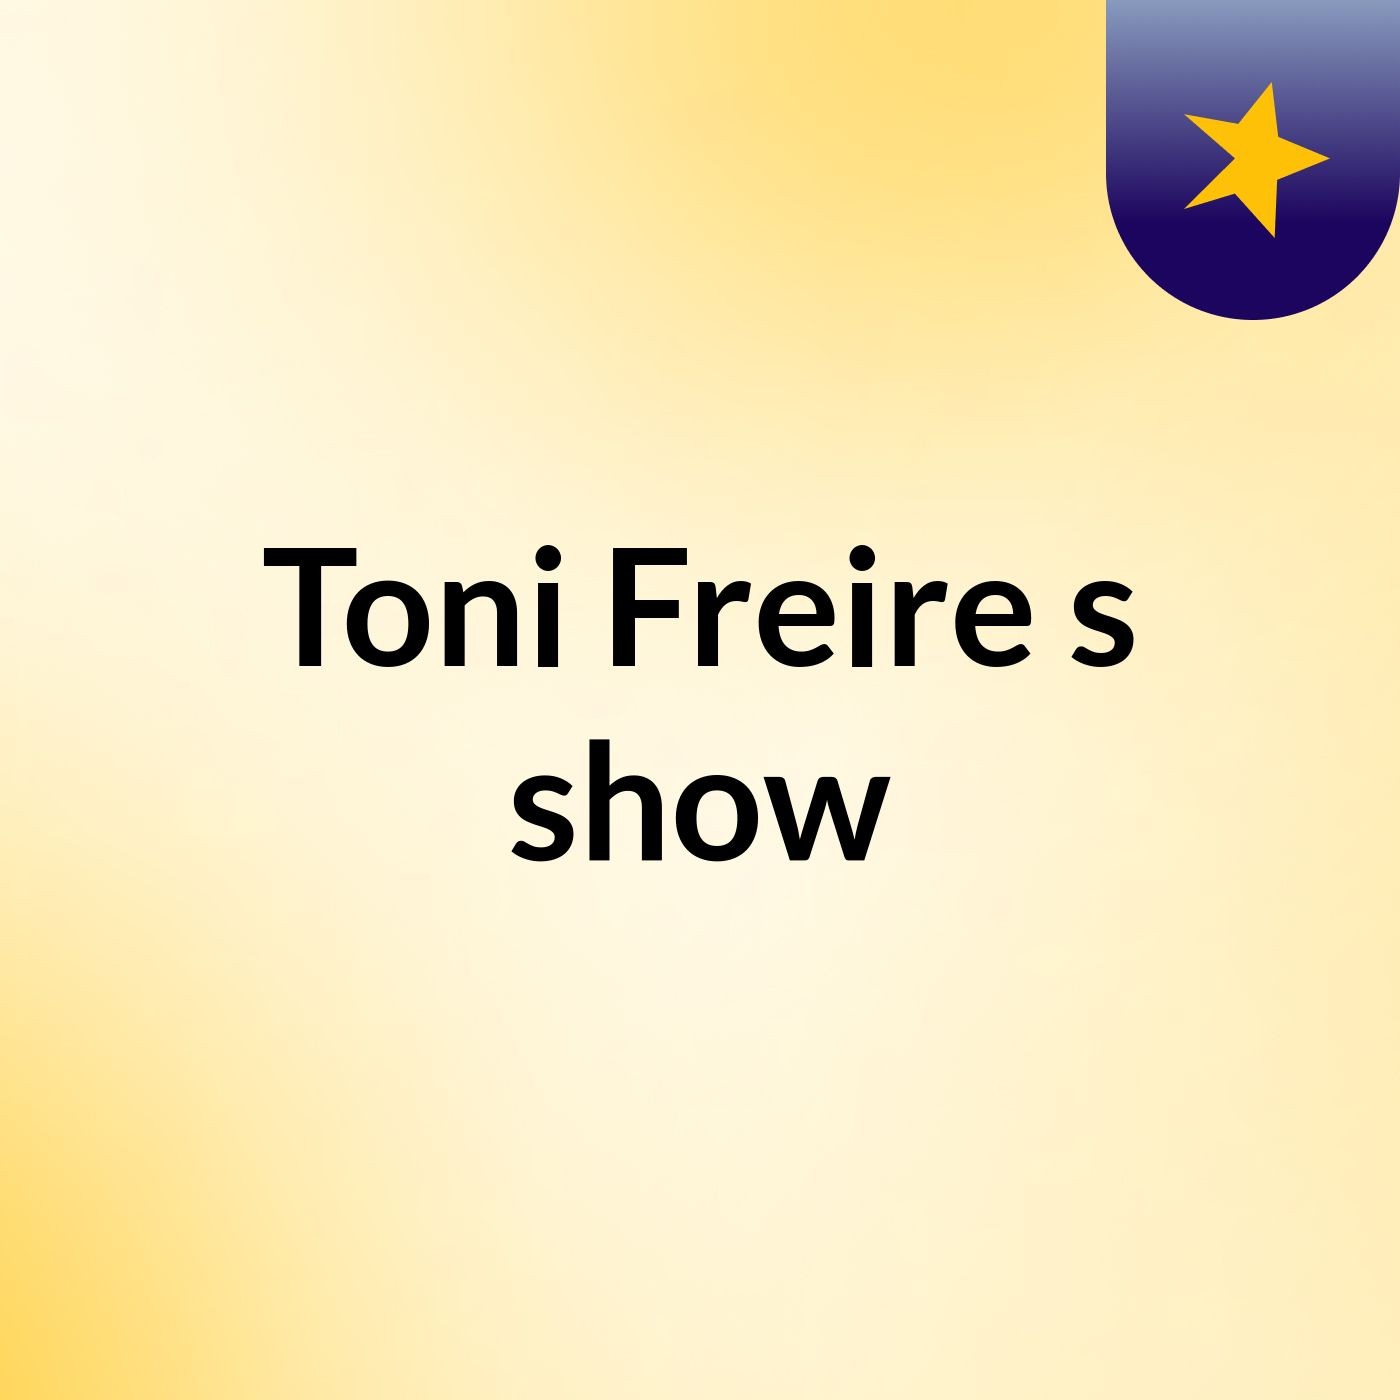 Toni Freire's show